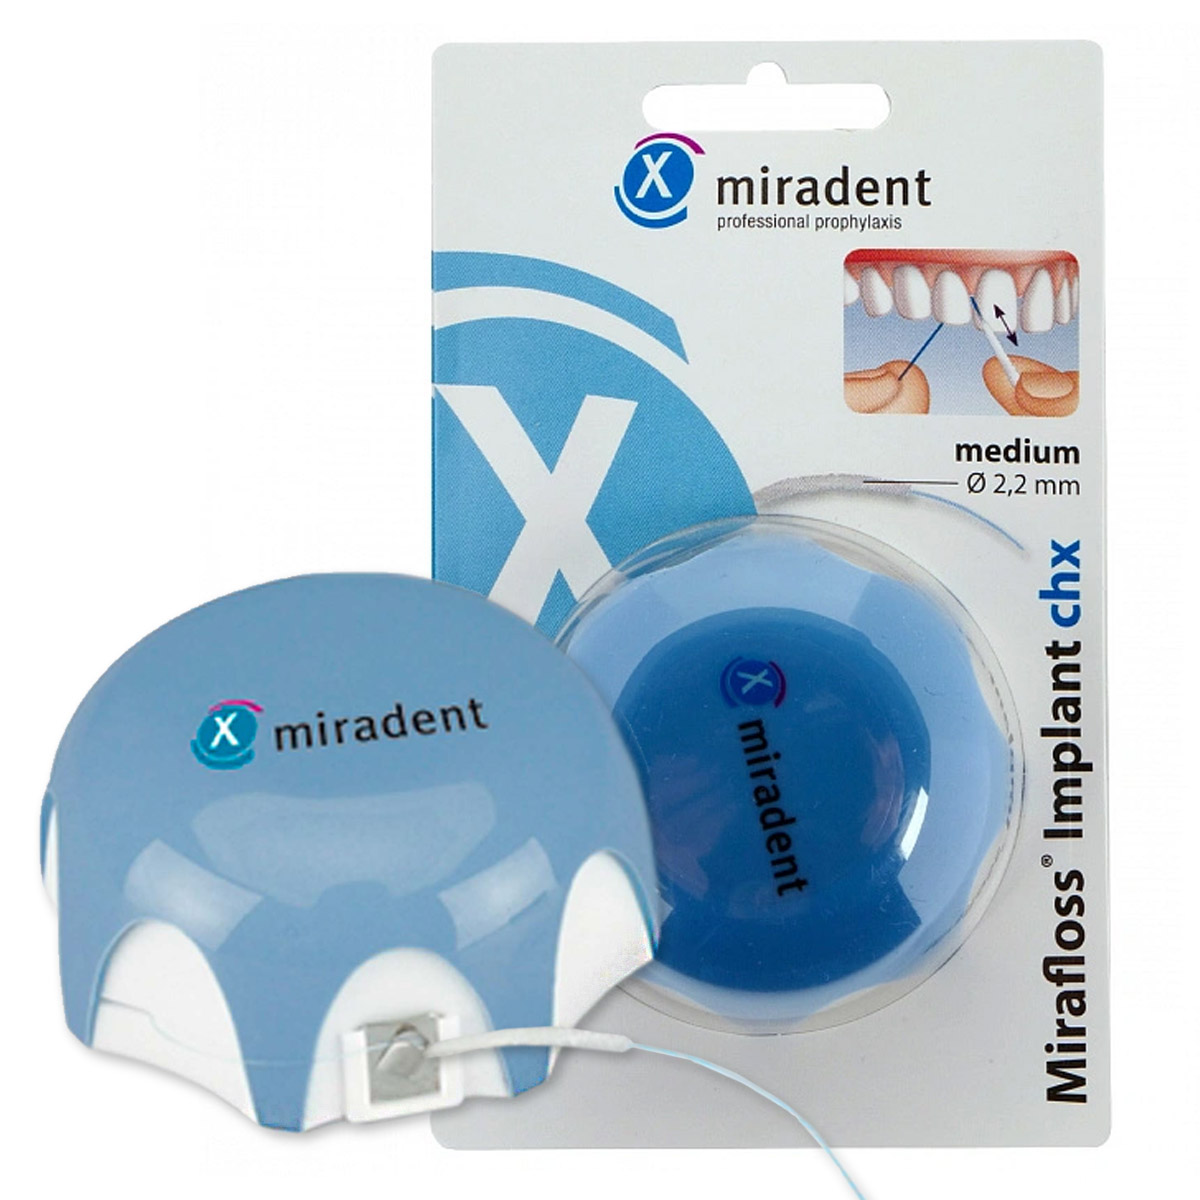 Зубная нить miradent Implant chx 2,2 мм для имплантов/брекетов зубная нить miradent mirafloss implant chx 1 8 мм для имплантов брекетов